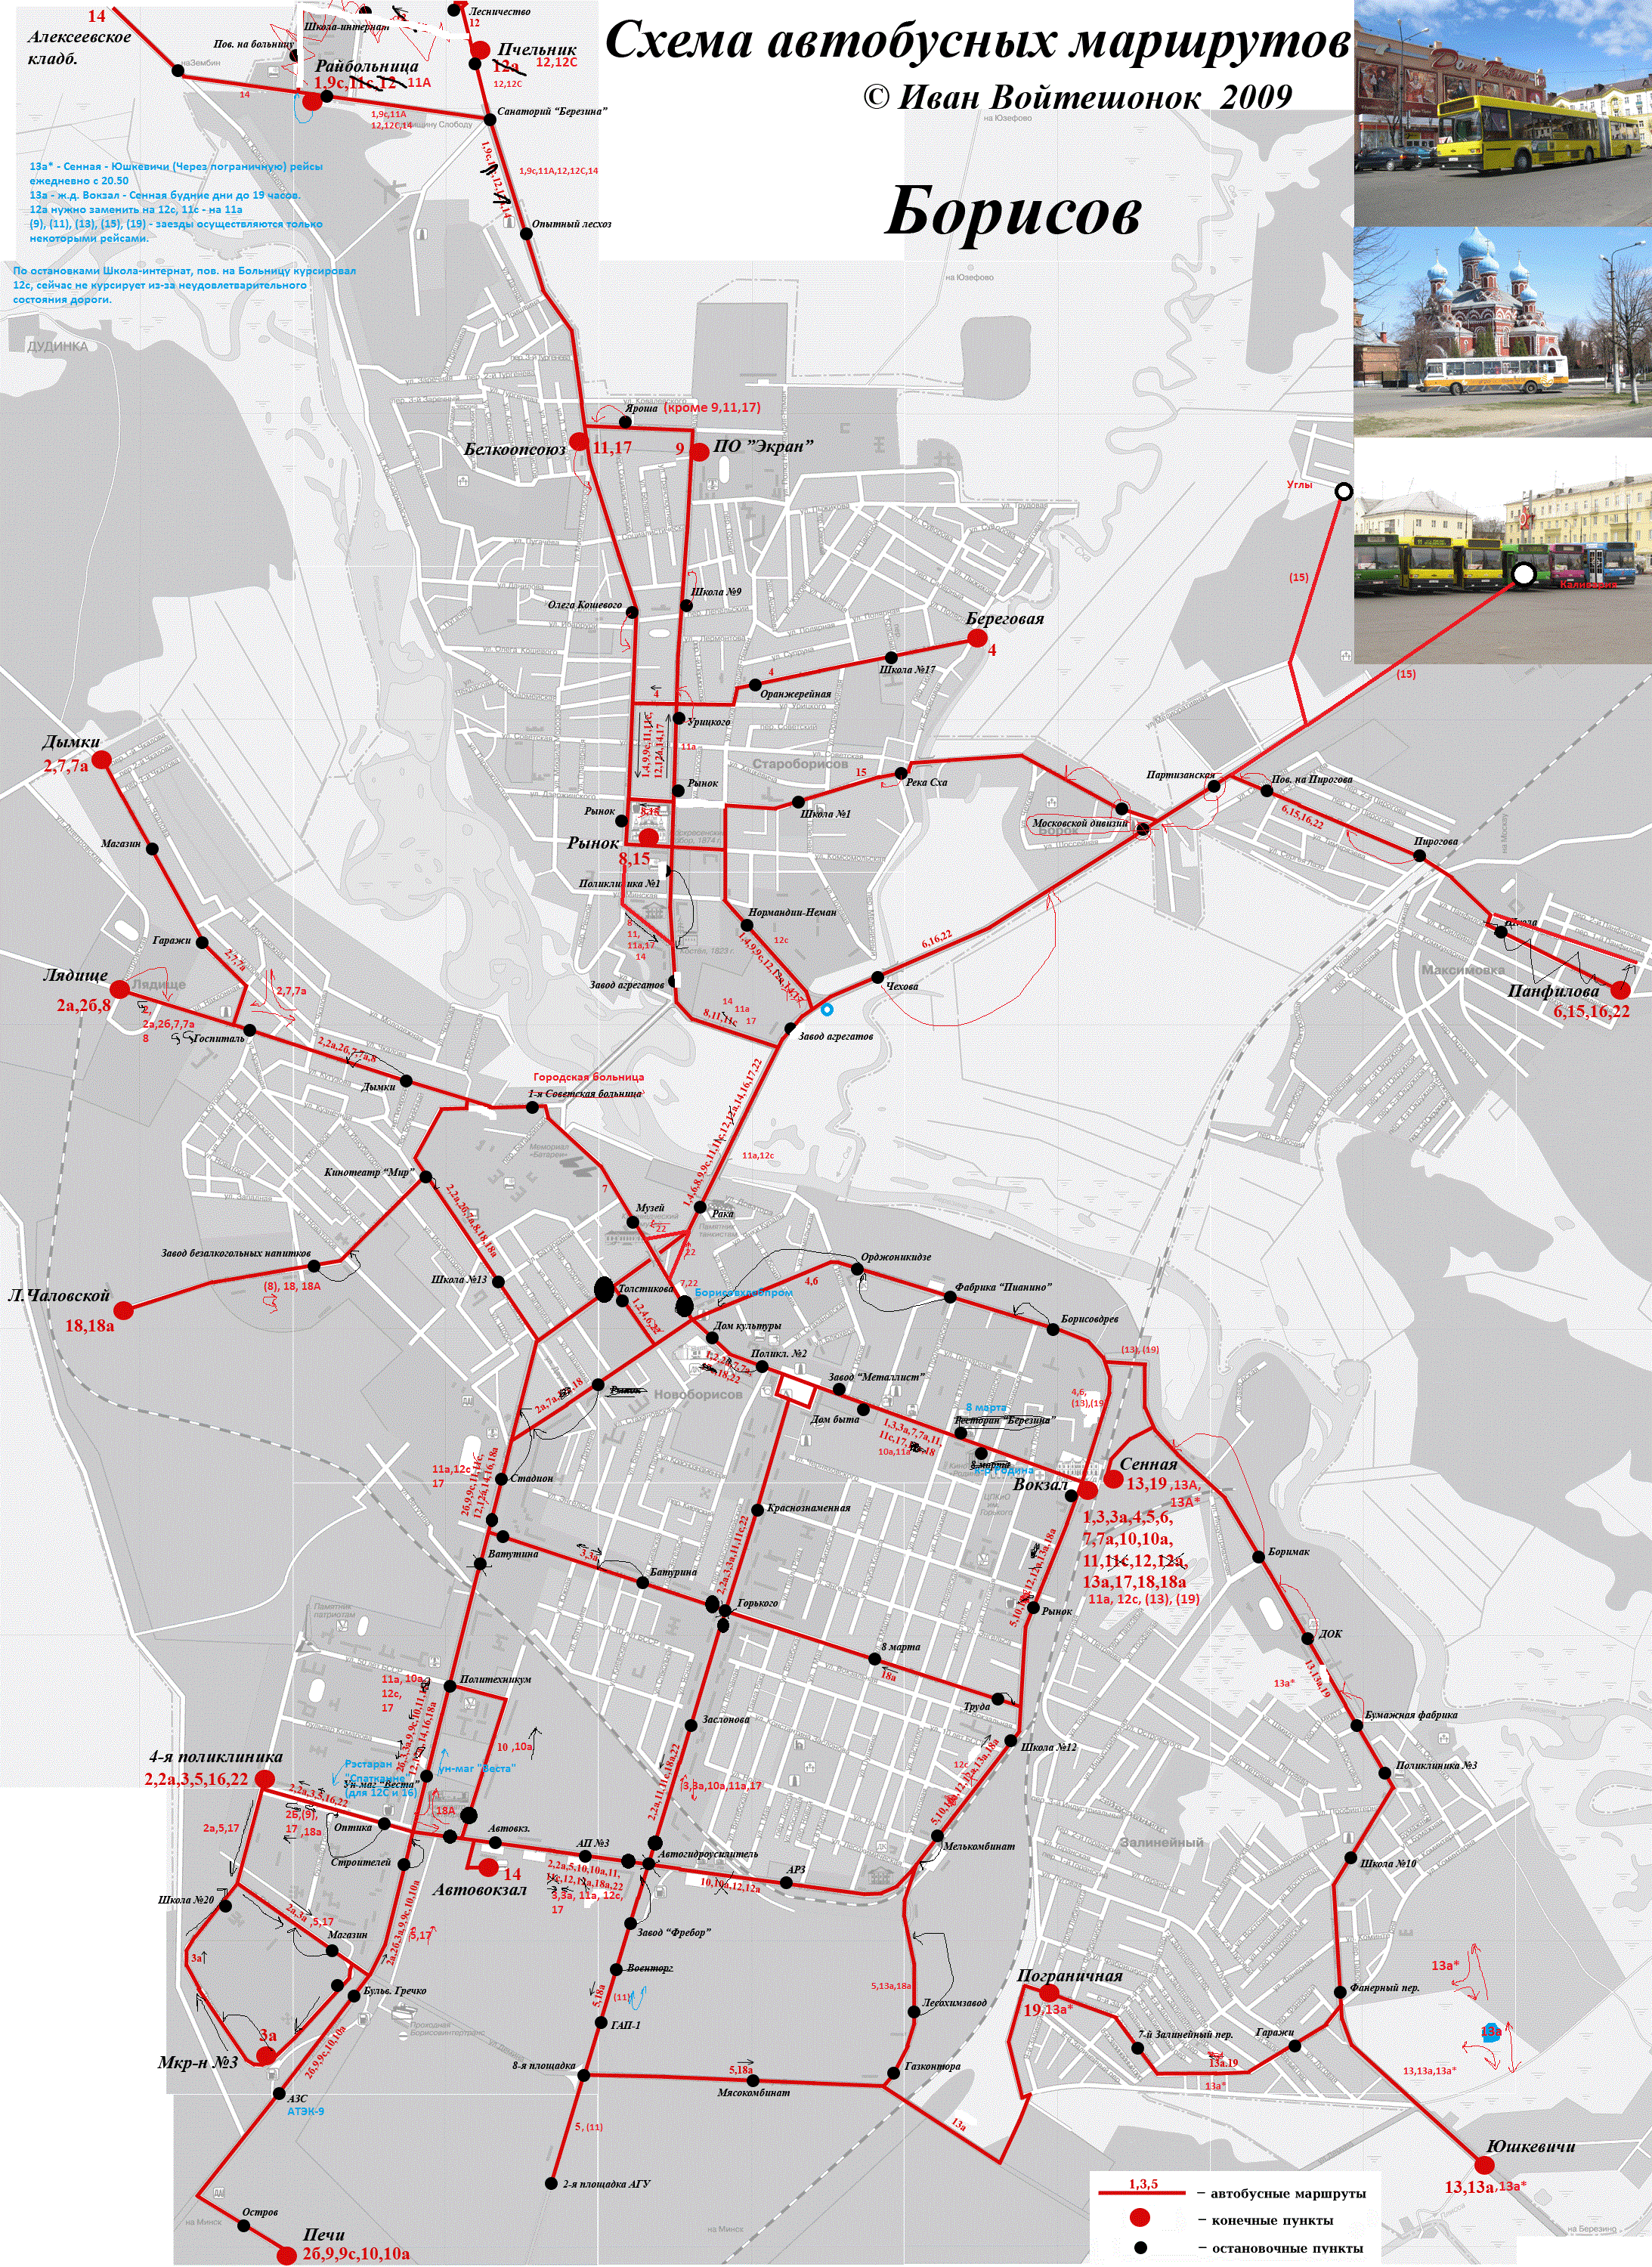 Схема маршрутов городского. Схемы маршрутов городского транспорта. Карта маршрутов городского транспорта. Схема городских автобусных маршрутов. Карта движения автобусов.